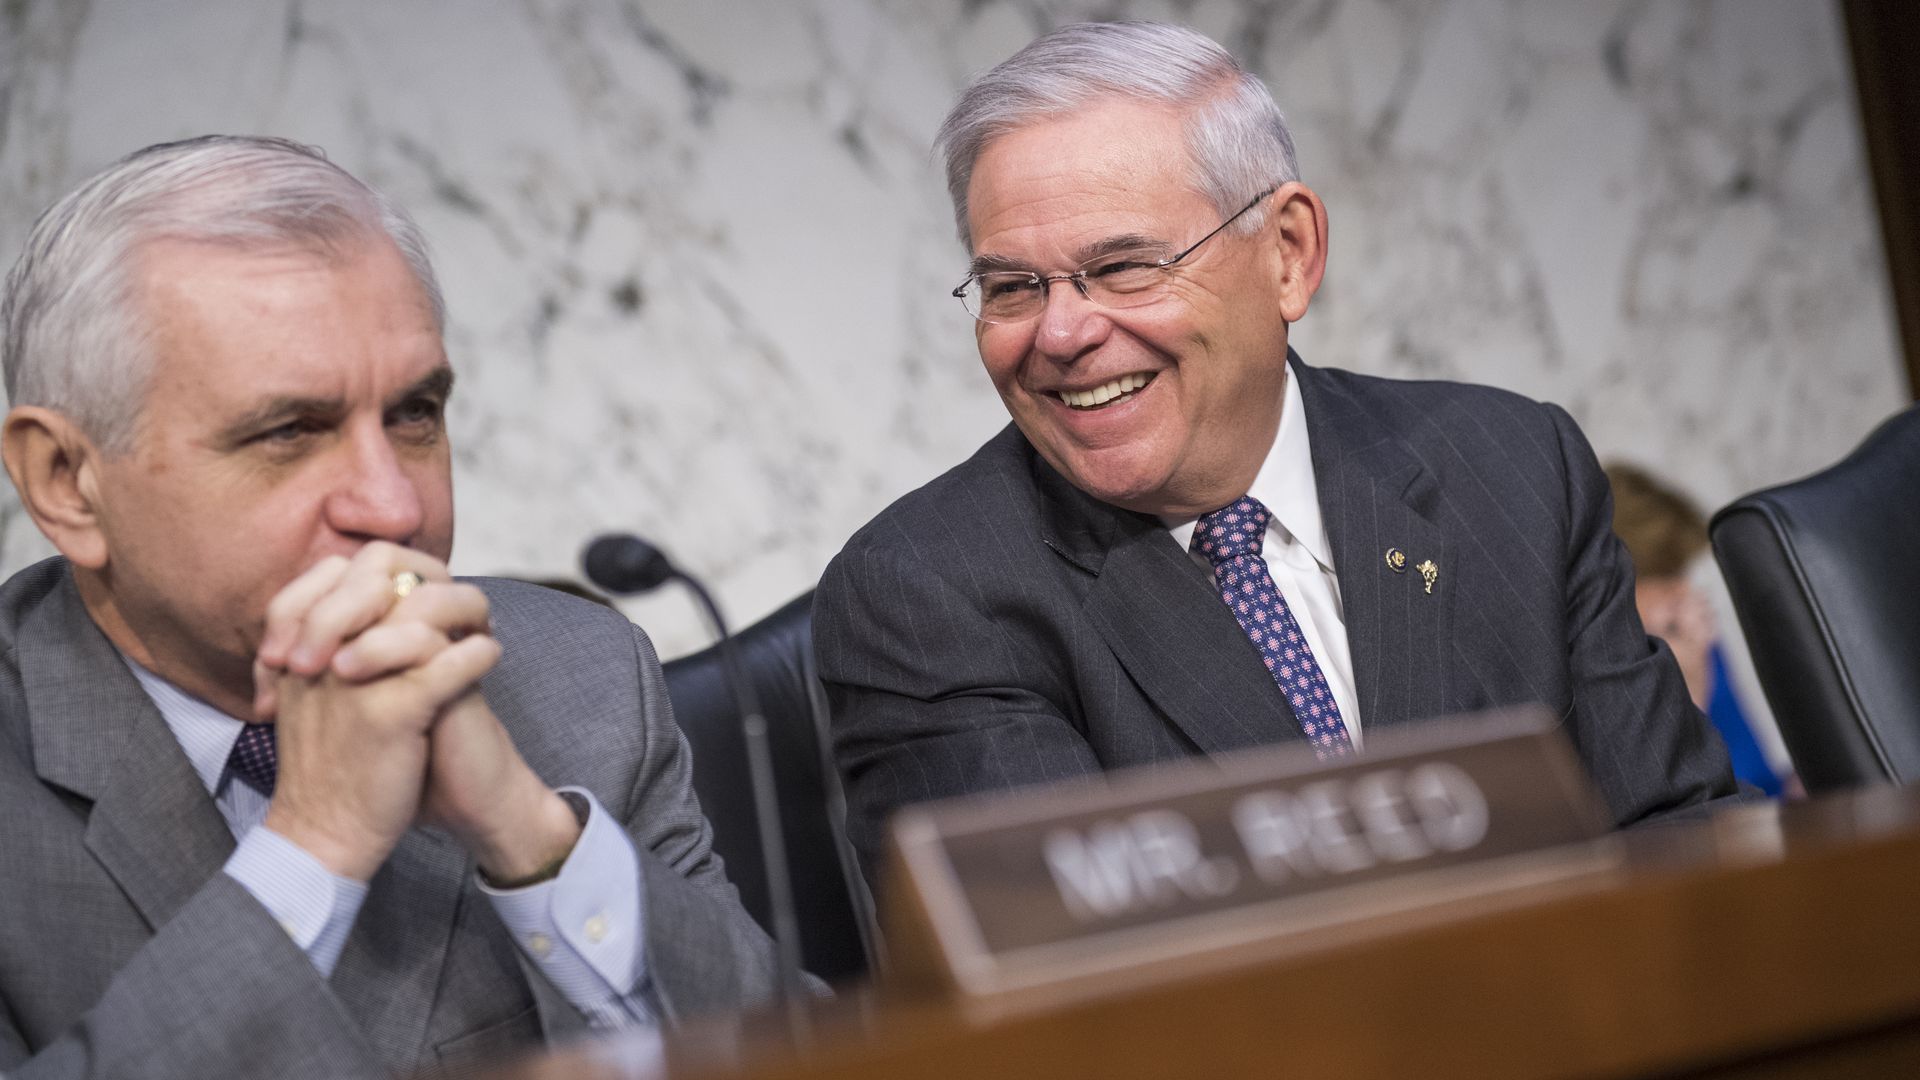 Sens. Jack Reed and Bob Menendez are seen laughing at a joint Senate hearing.